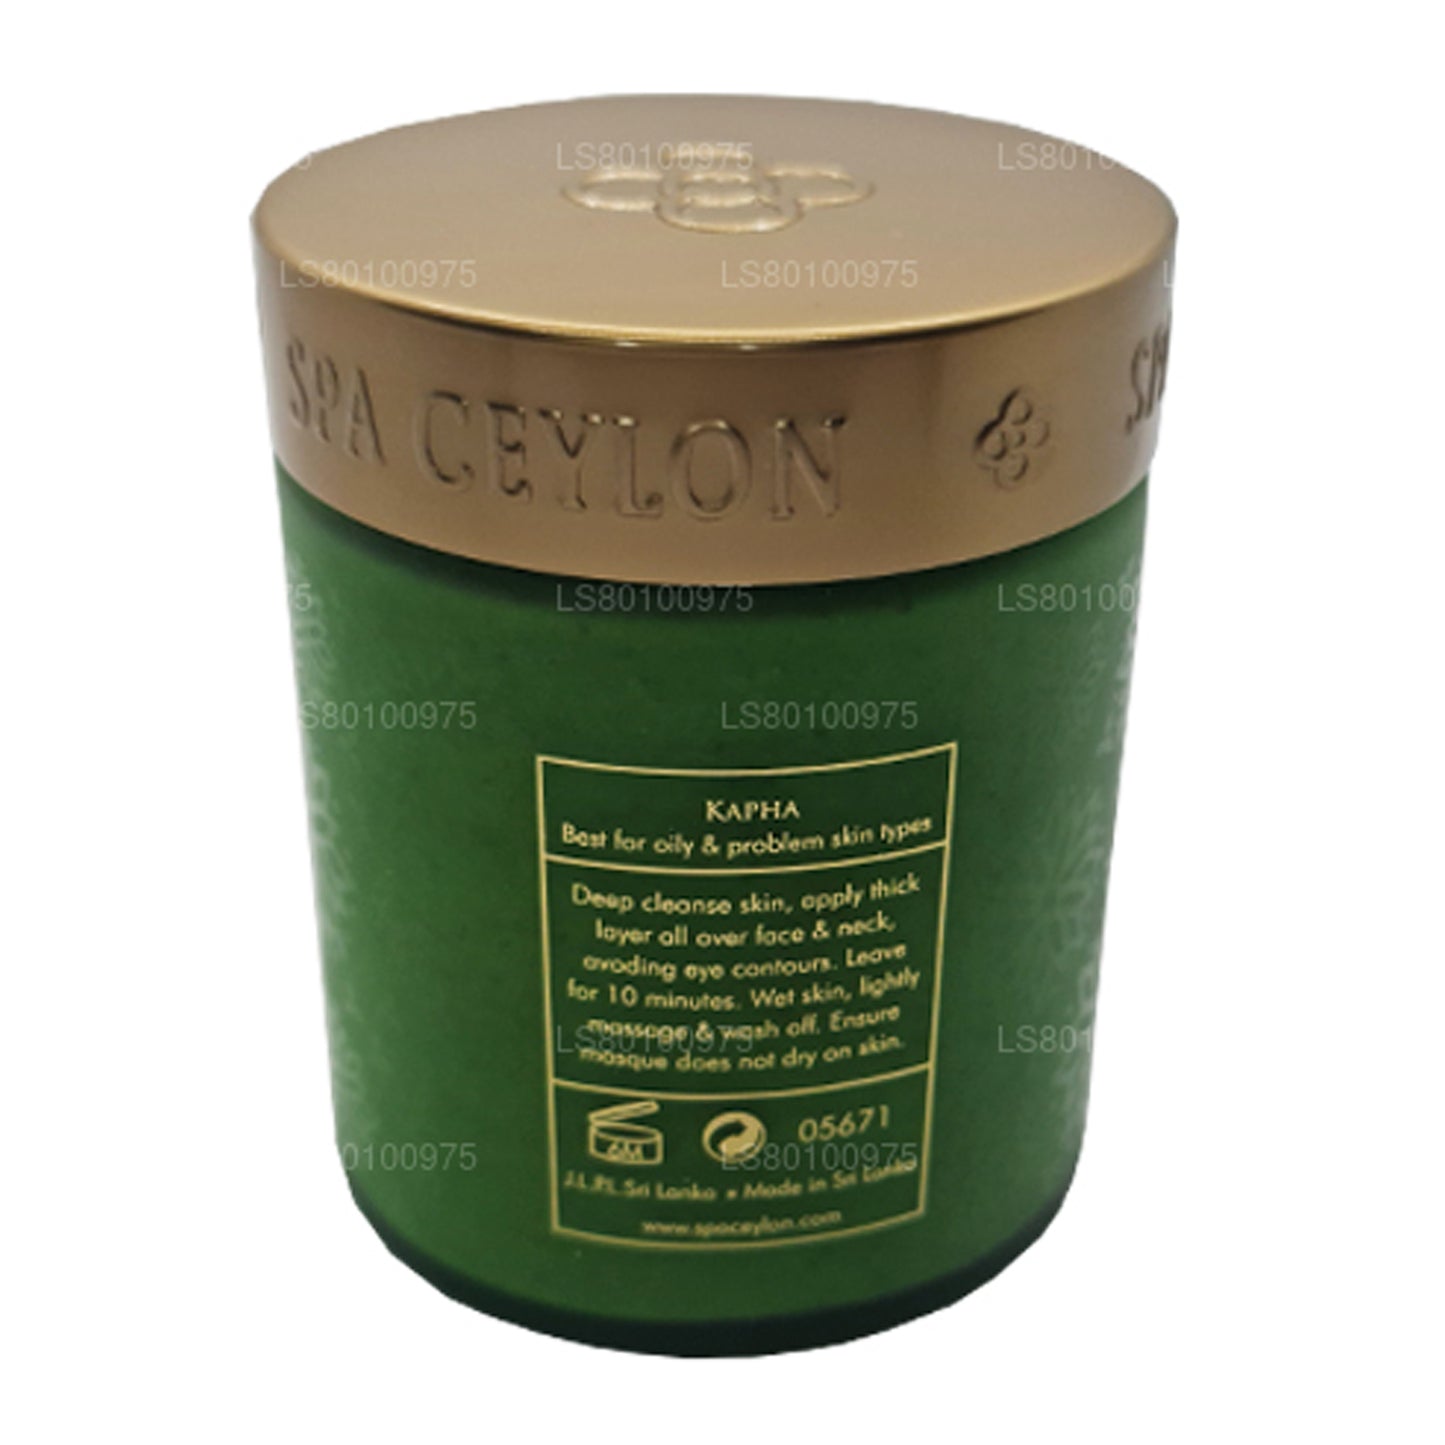 Spa Seylan Neem ve Çay Ağacı Arındırıcı Mineral Maske (200g)